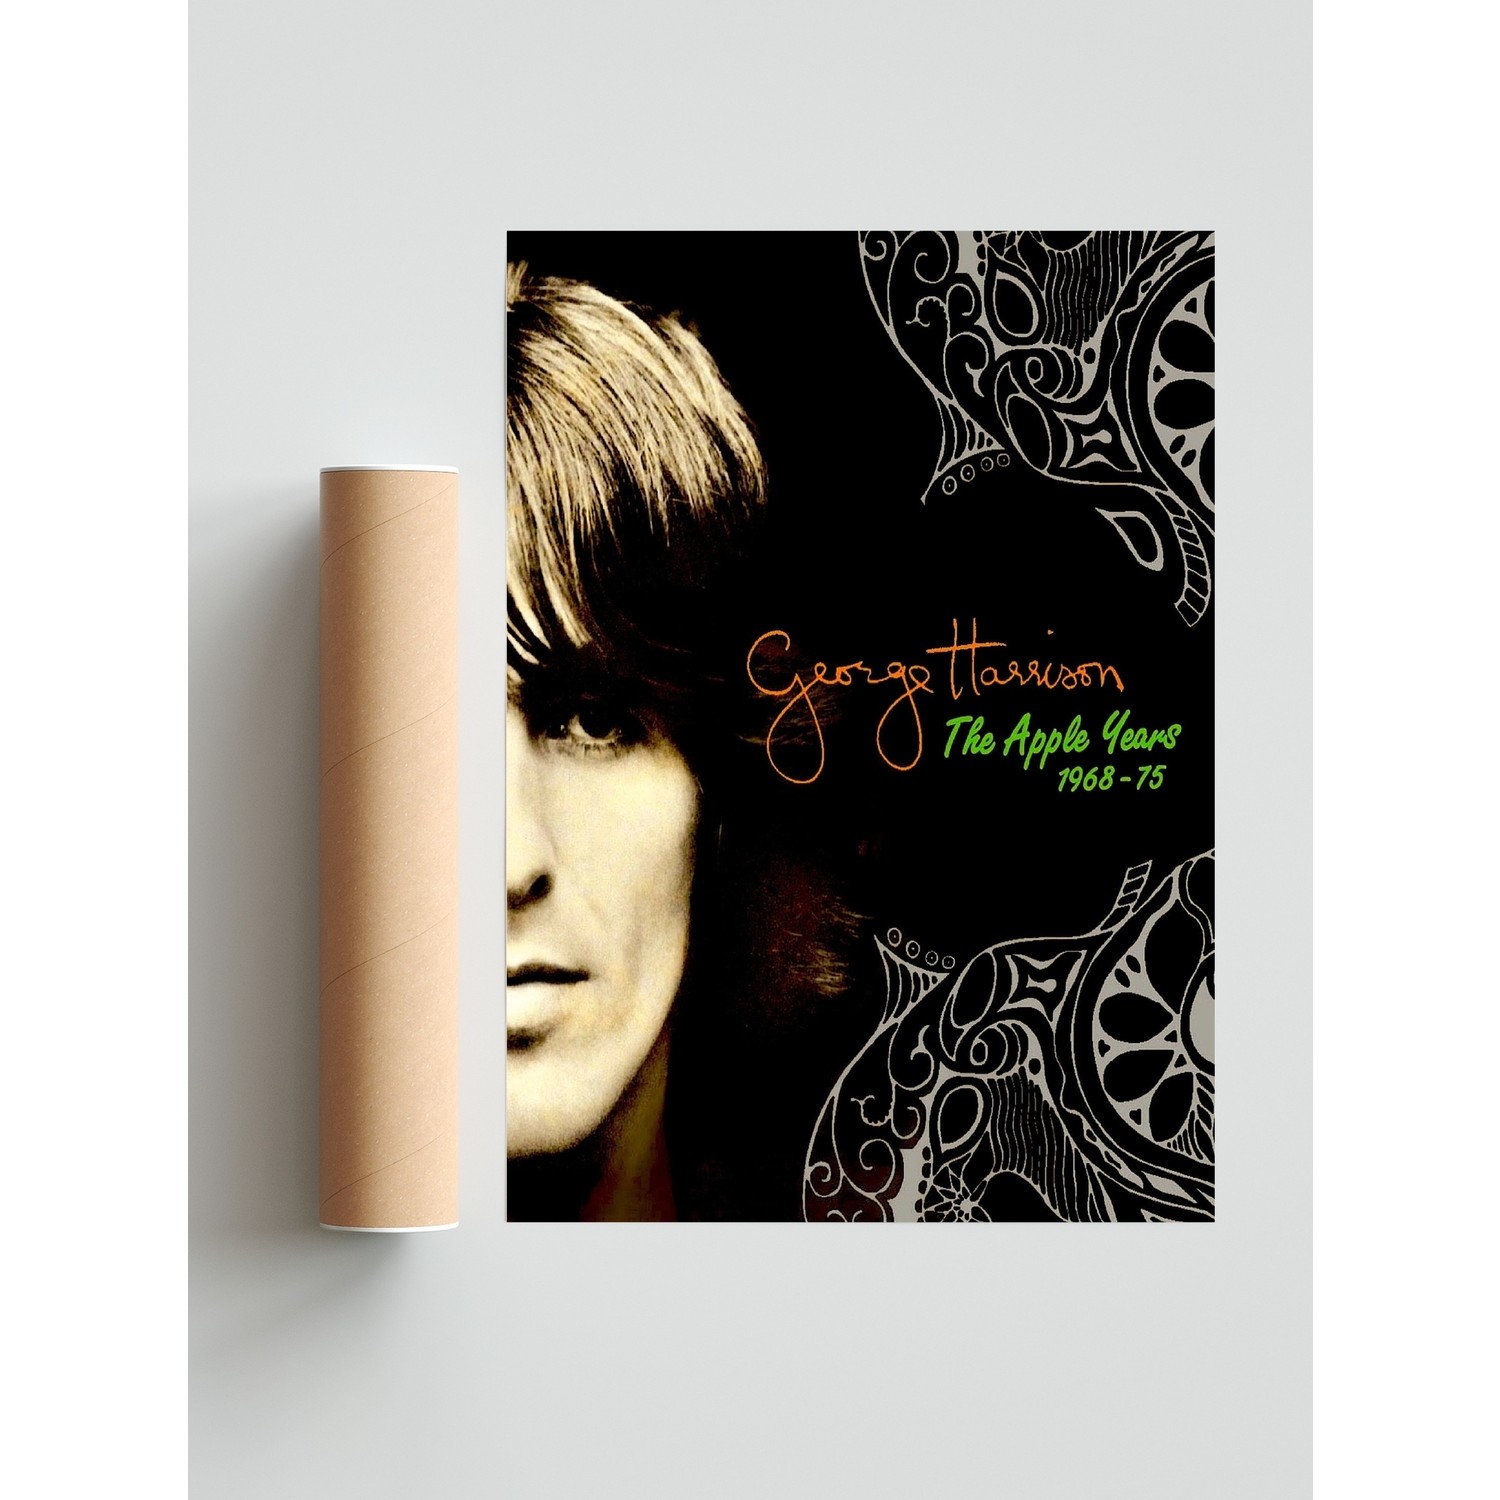 アップル・イヤーズ 1968-75＜6SHM-CD+DVD付＞ジョージハリスン - 洋楽